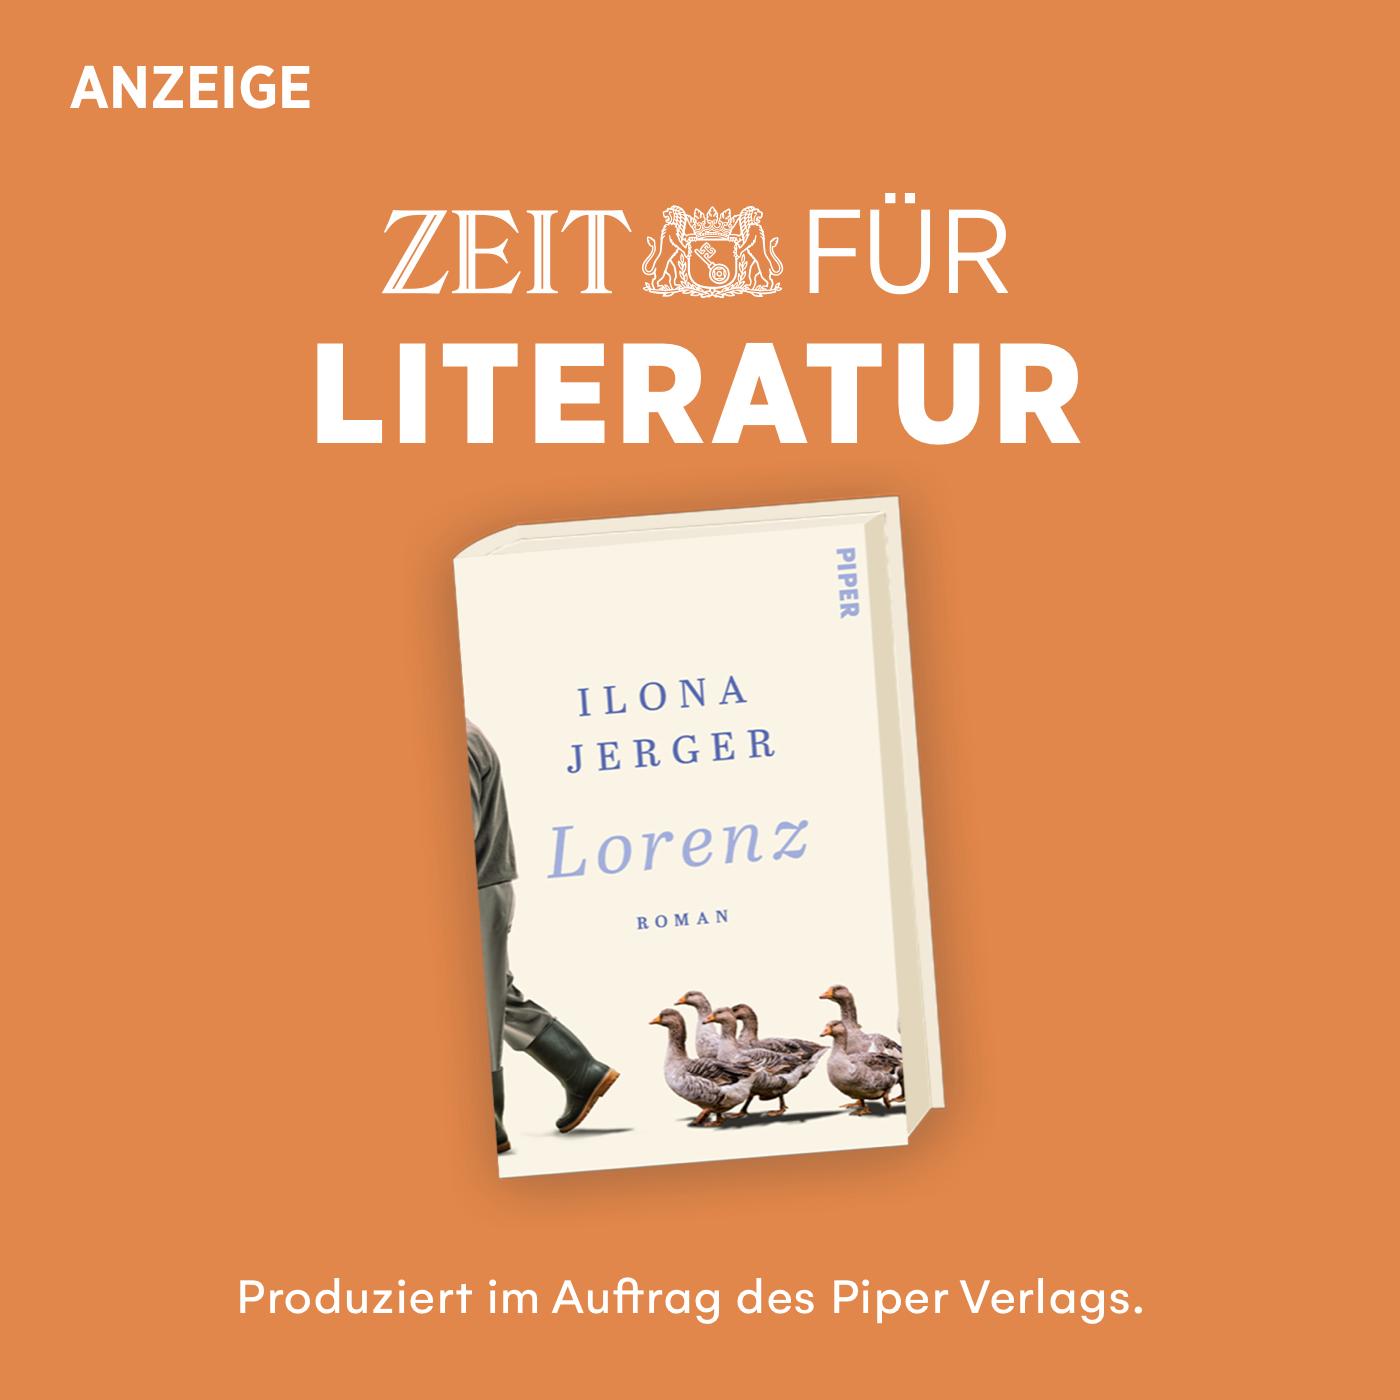 ZEIT für Literatur mit Ilona Jerger